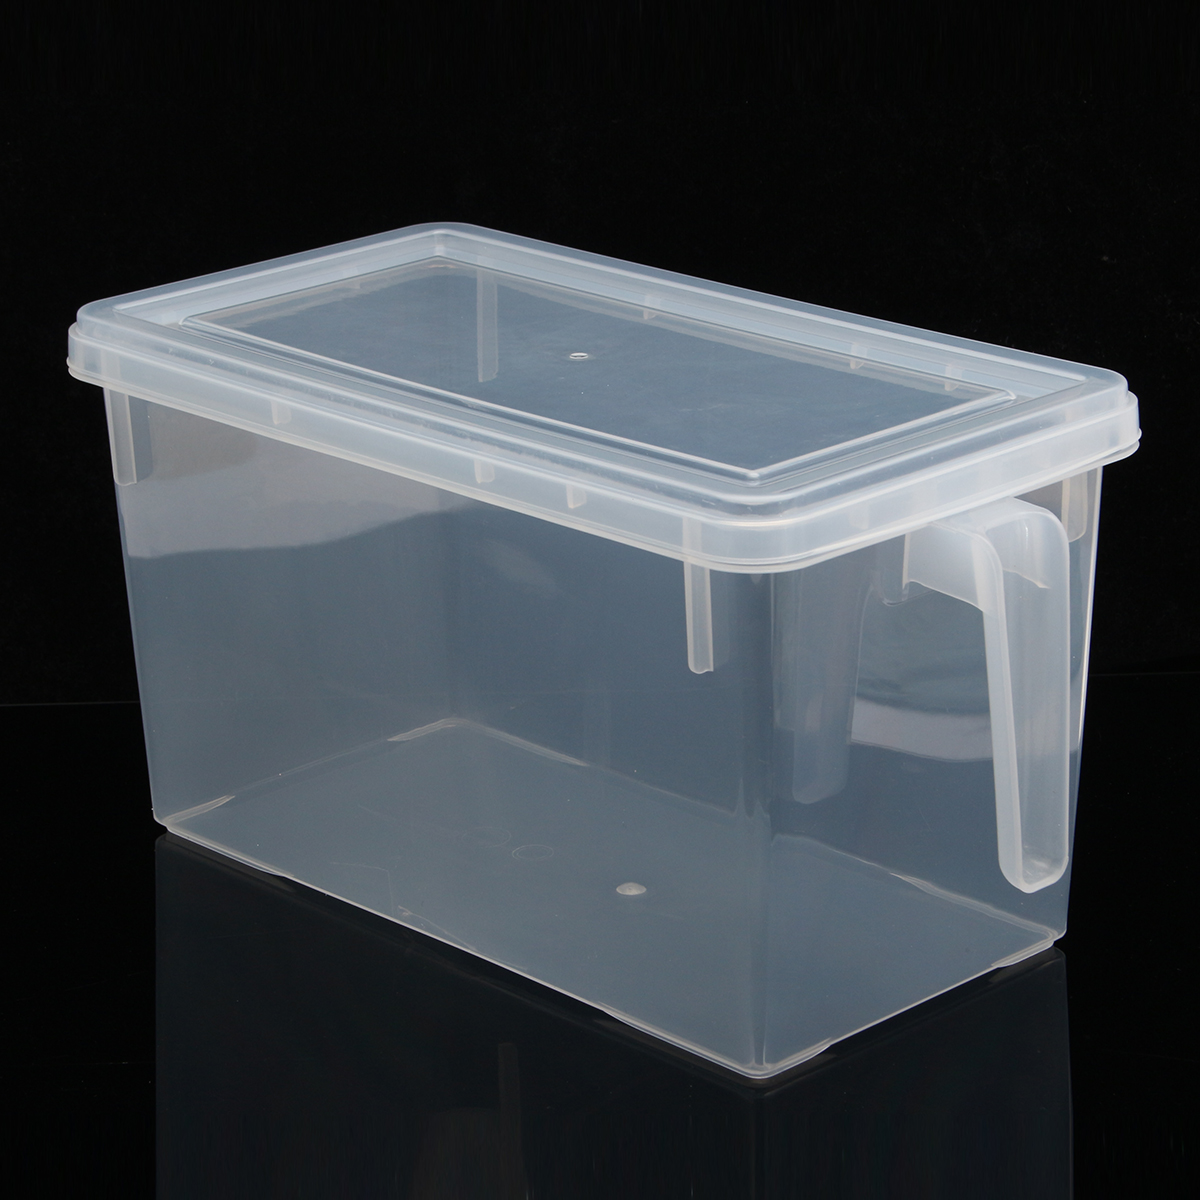 

4.7L Kitchen Food Storage Box Sealed Crisper Refrigerator Organizer Container Preservation